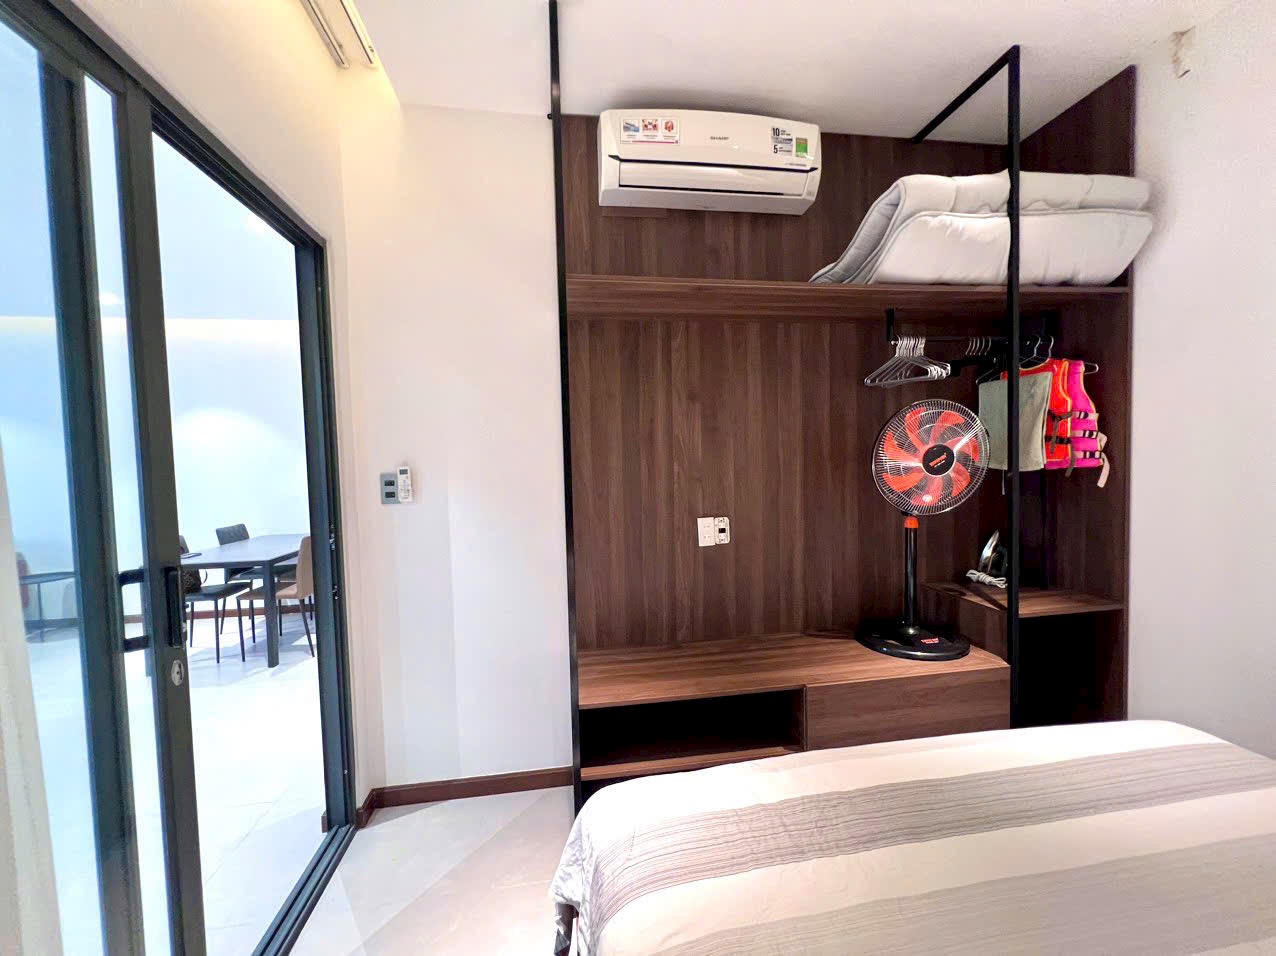 Phòng ngủ 2.1 - Căn hộ 2PN trực biển Mường Thanh Viễn Triều mới 100%